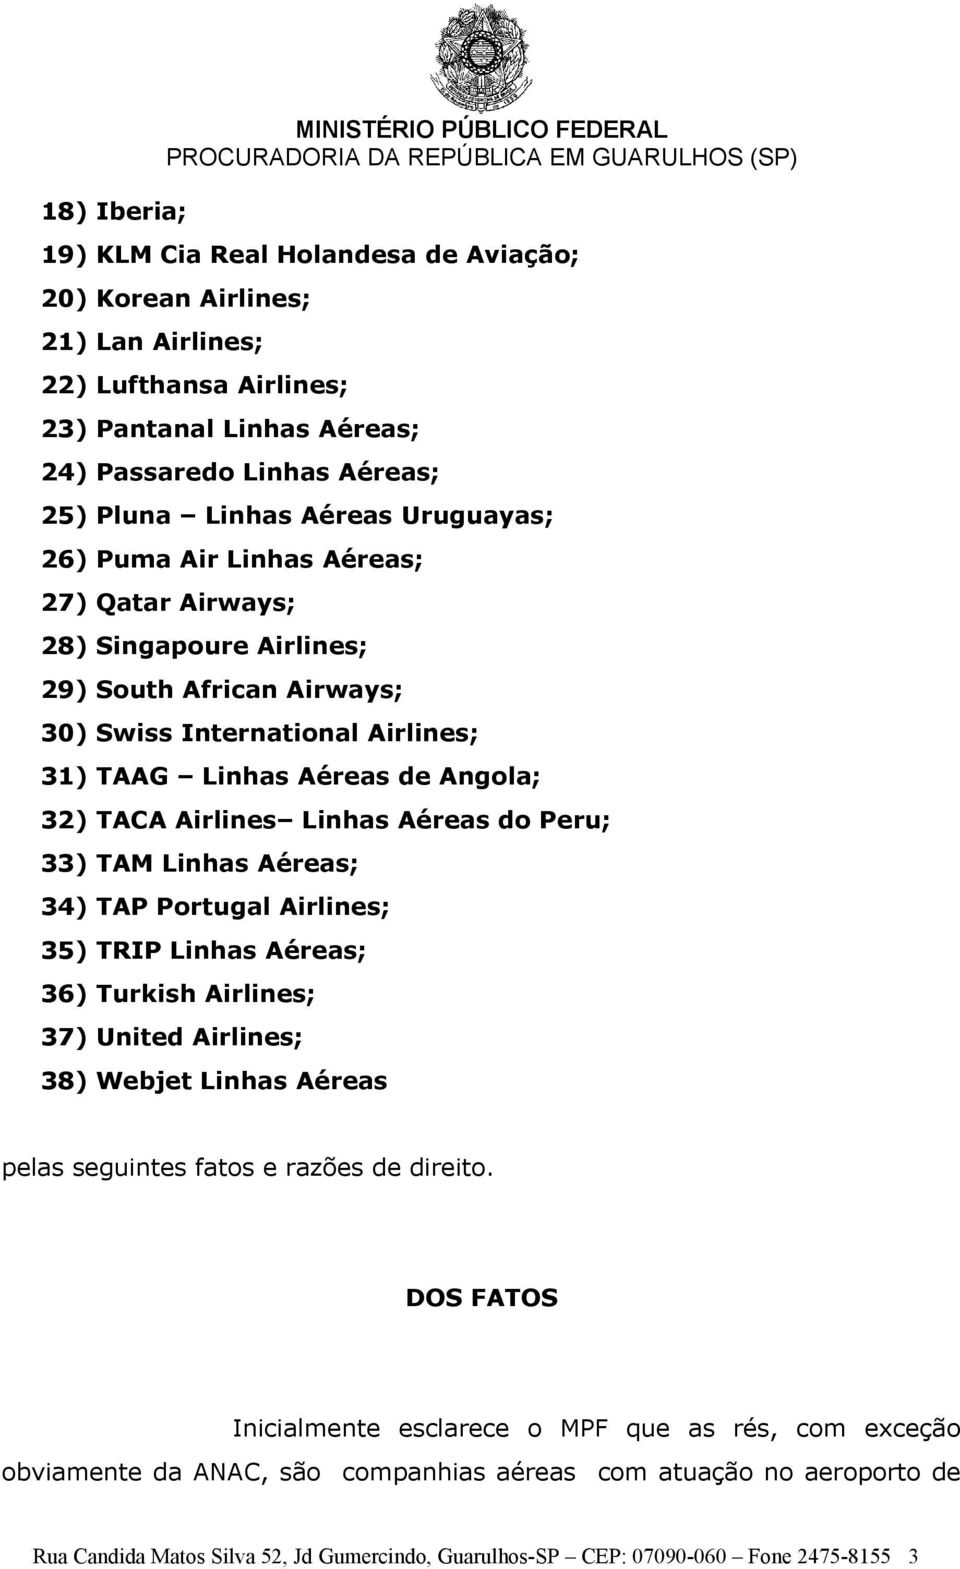 Angola; 32) TACA Airlines Linhas Aéreas do Peru; 33) TAM Linhas Aéreas; 34) TAP Portugal Airlines; 35) TRIP Linhas Aéreas; 36) Turkish Airlines; 37) United Airlines; 38) Webjet Linhas Aéreas pelas